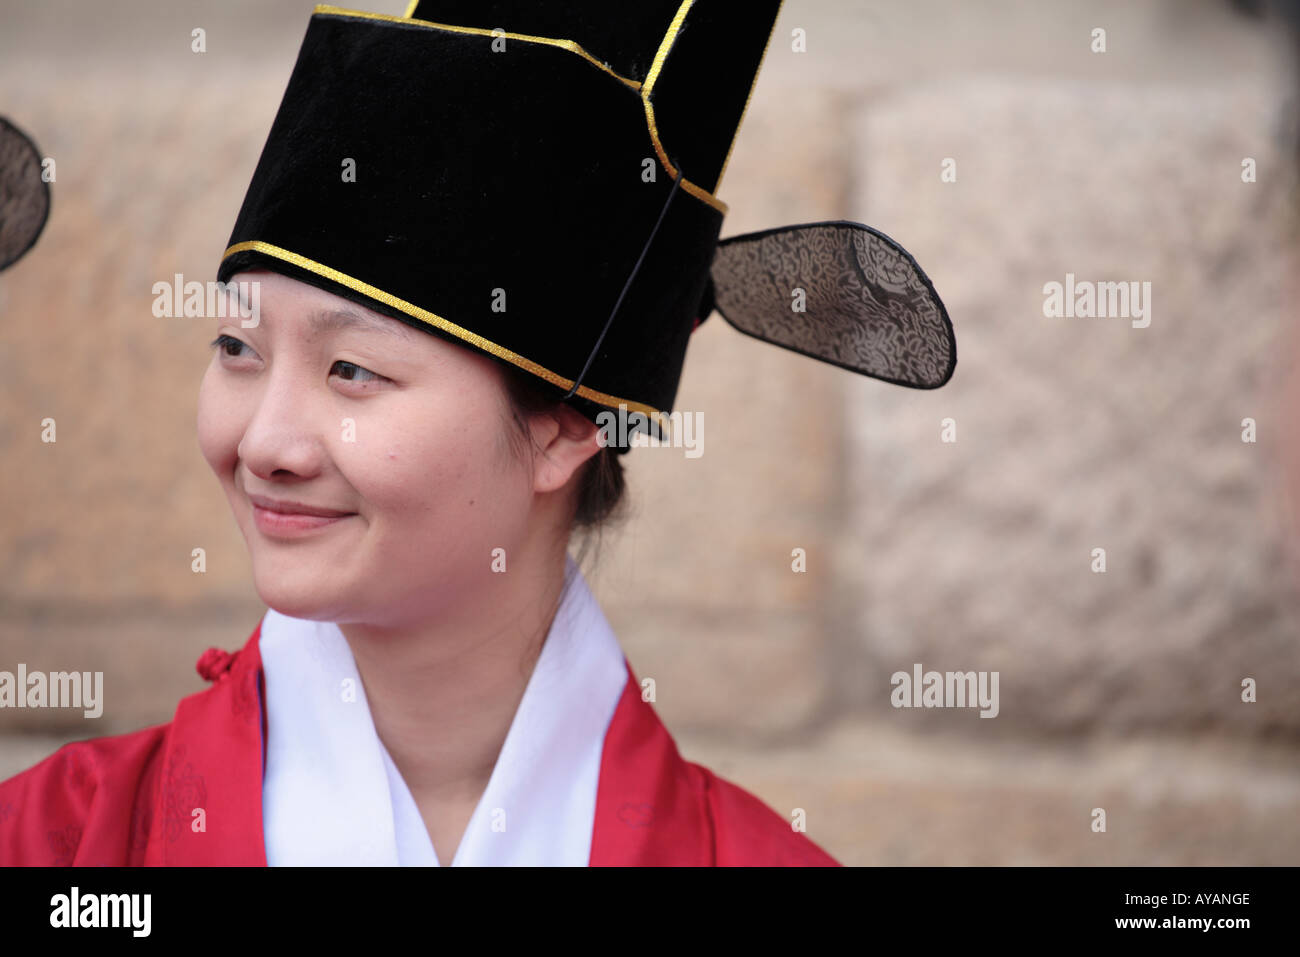 South Korea-Seoul-Schauspieler in historischen Kostümen vorbereiten re Inkraftsetzung der königliche Prozession am Changgyeonggung eine fünf Stockfoto